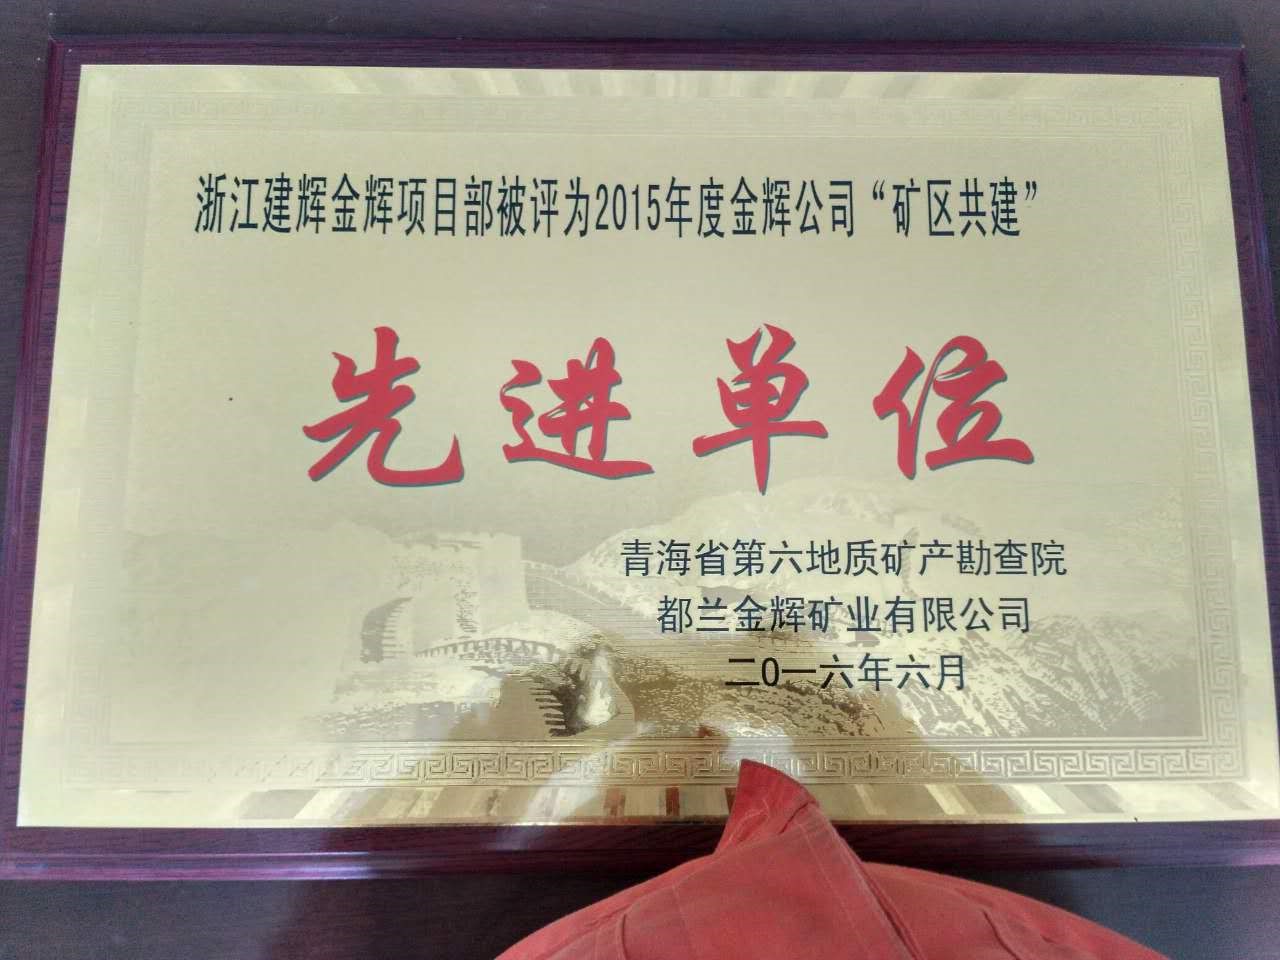 2016年6月公司驻都兰金辉矿业项目部获业主颁发荣誉奖牌